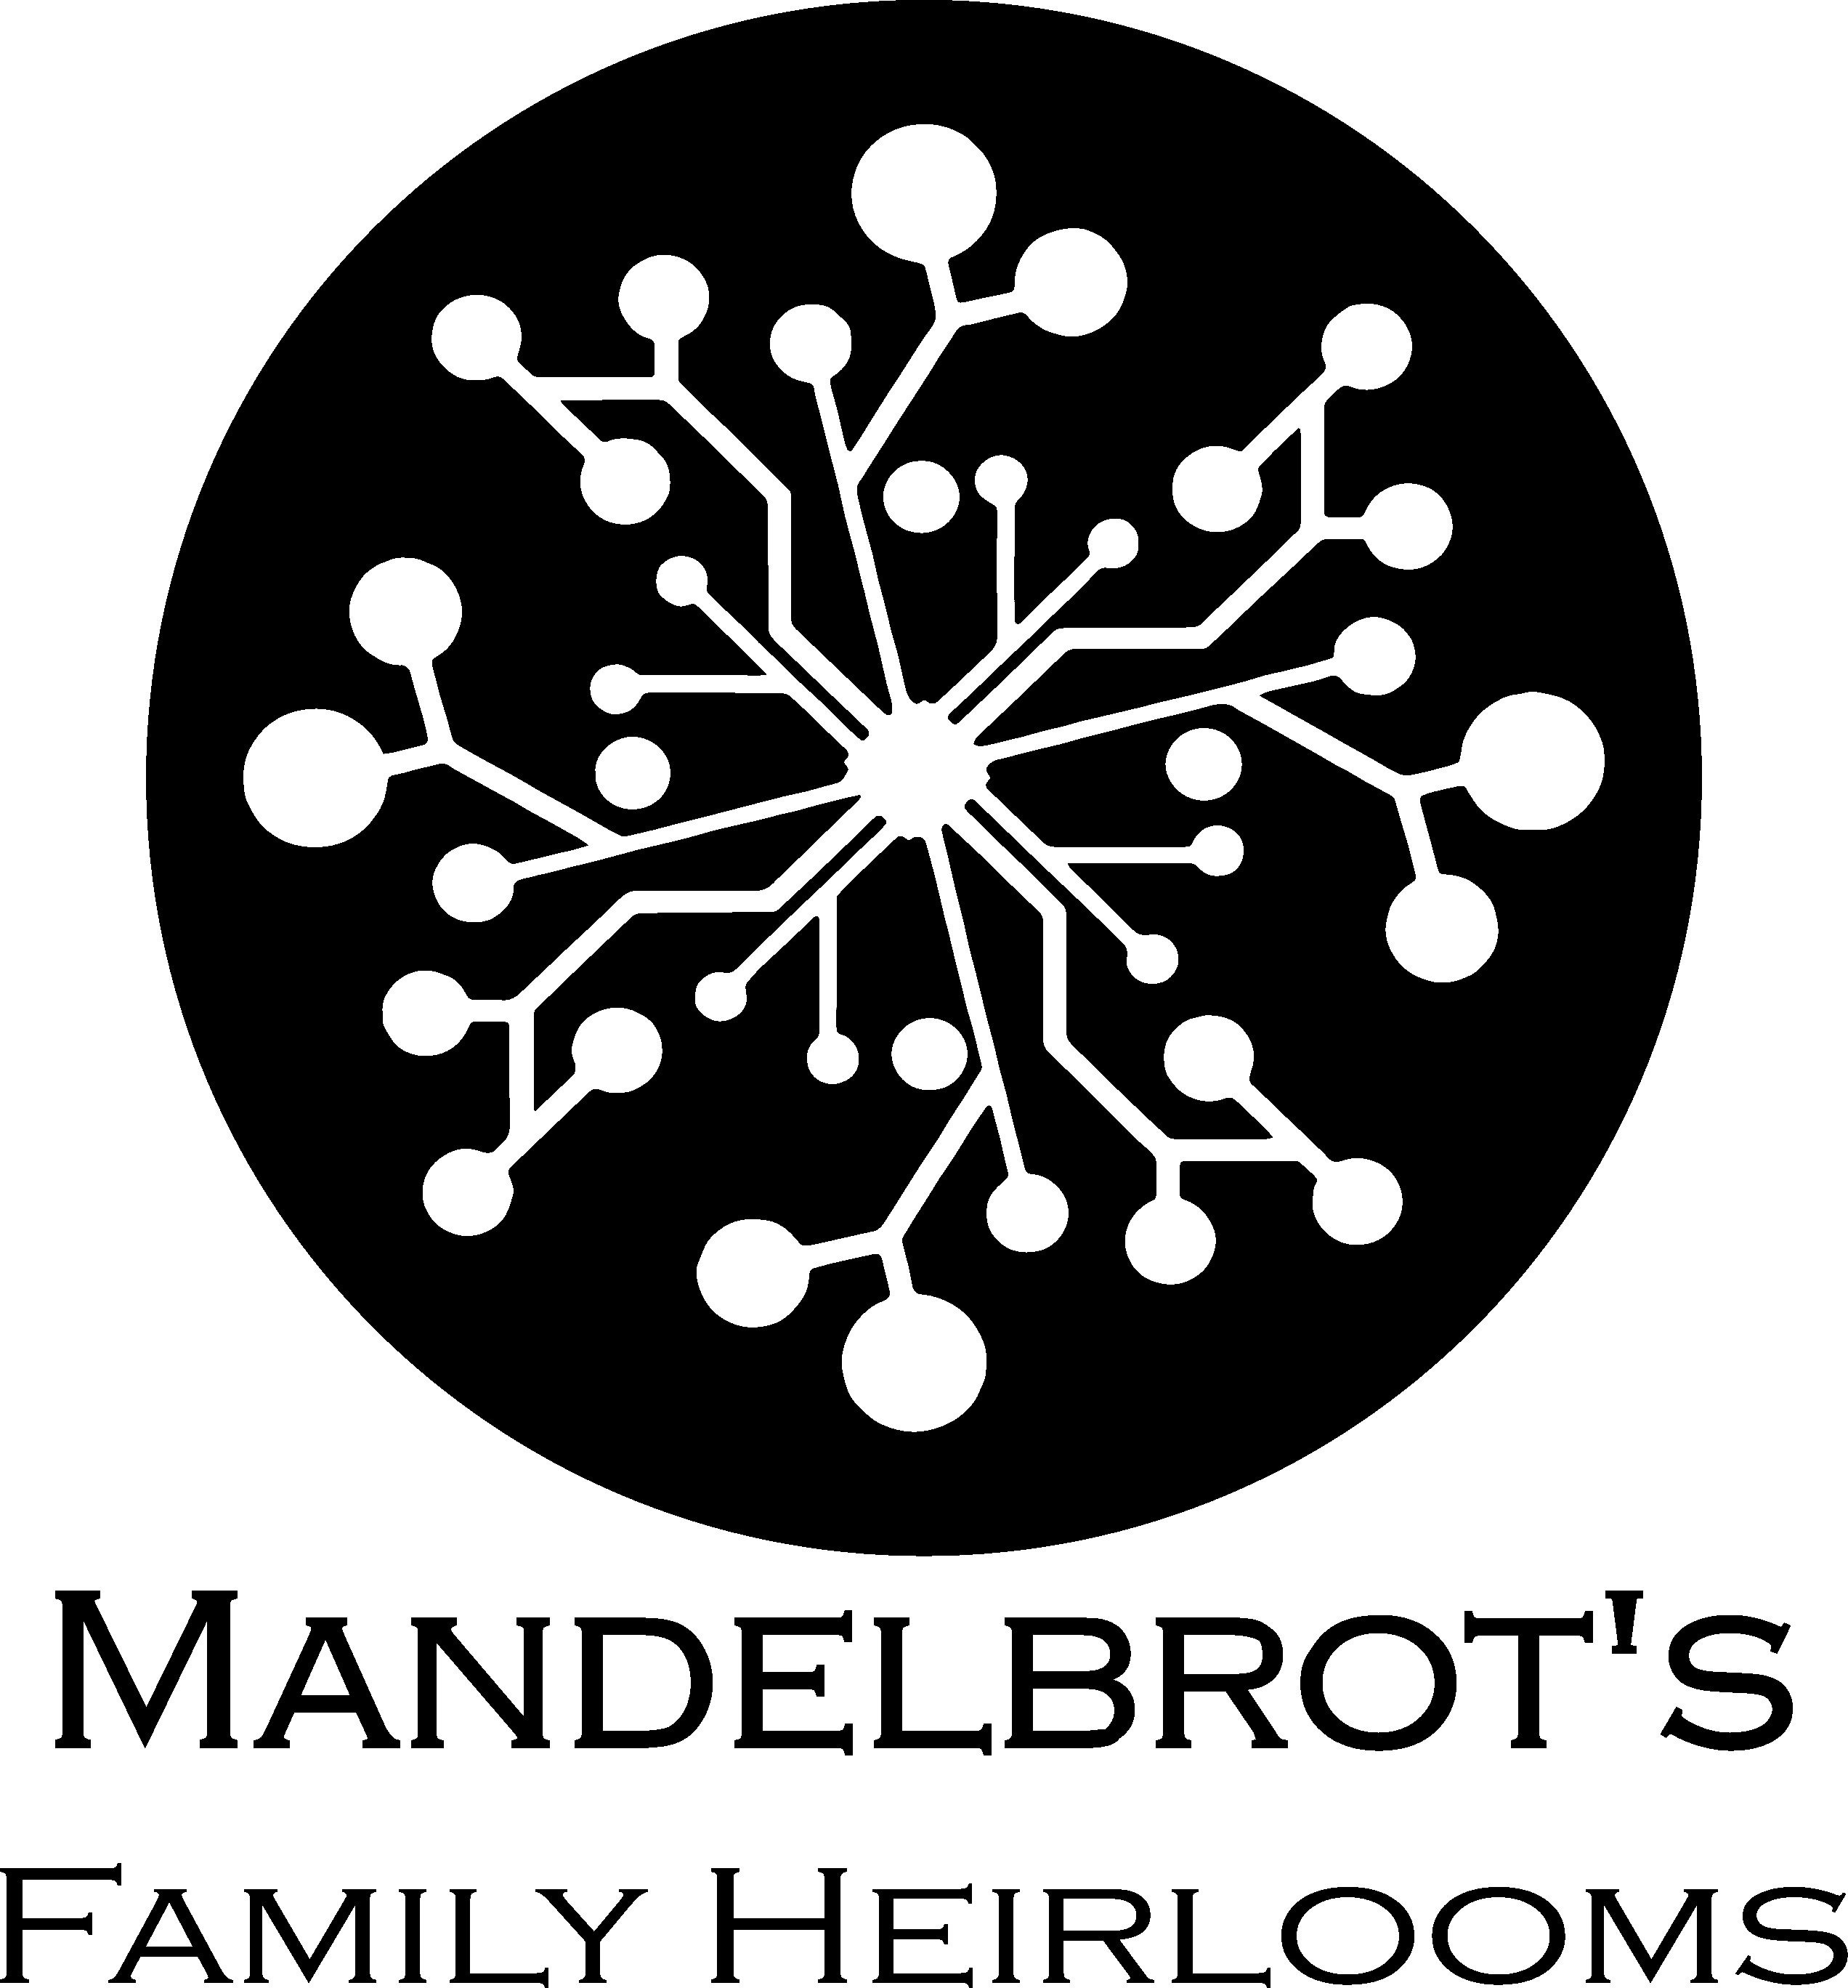 Mandelbrot's Family Heirlooms